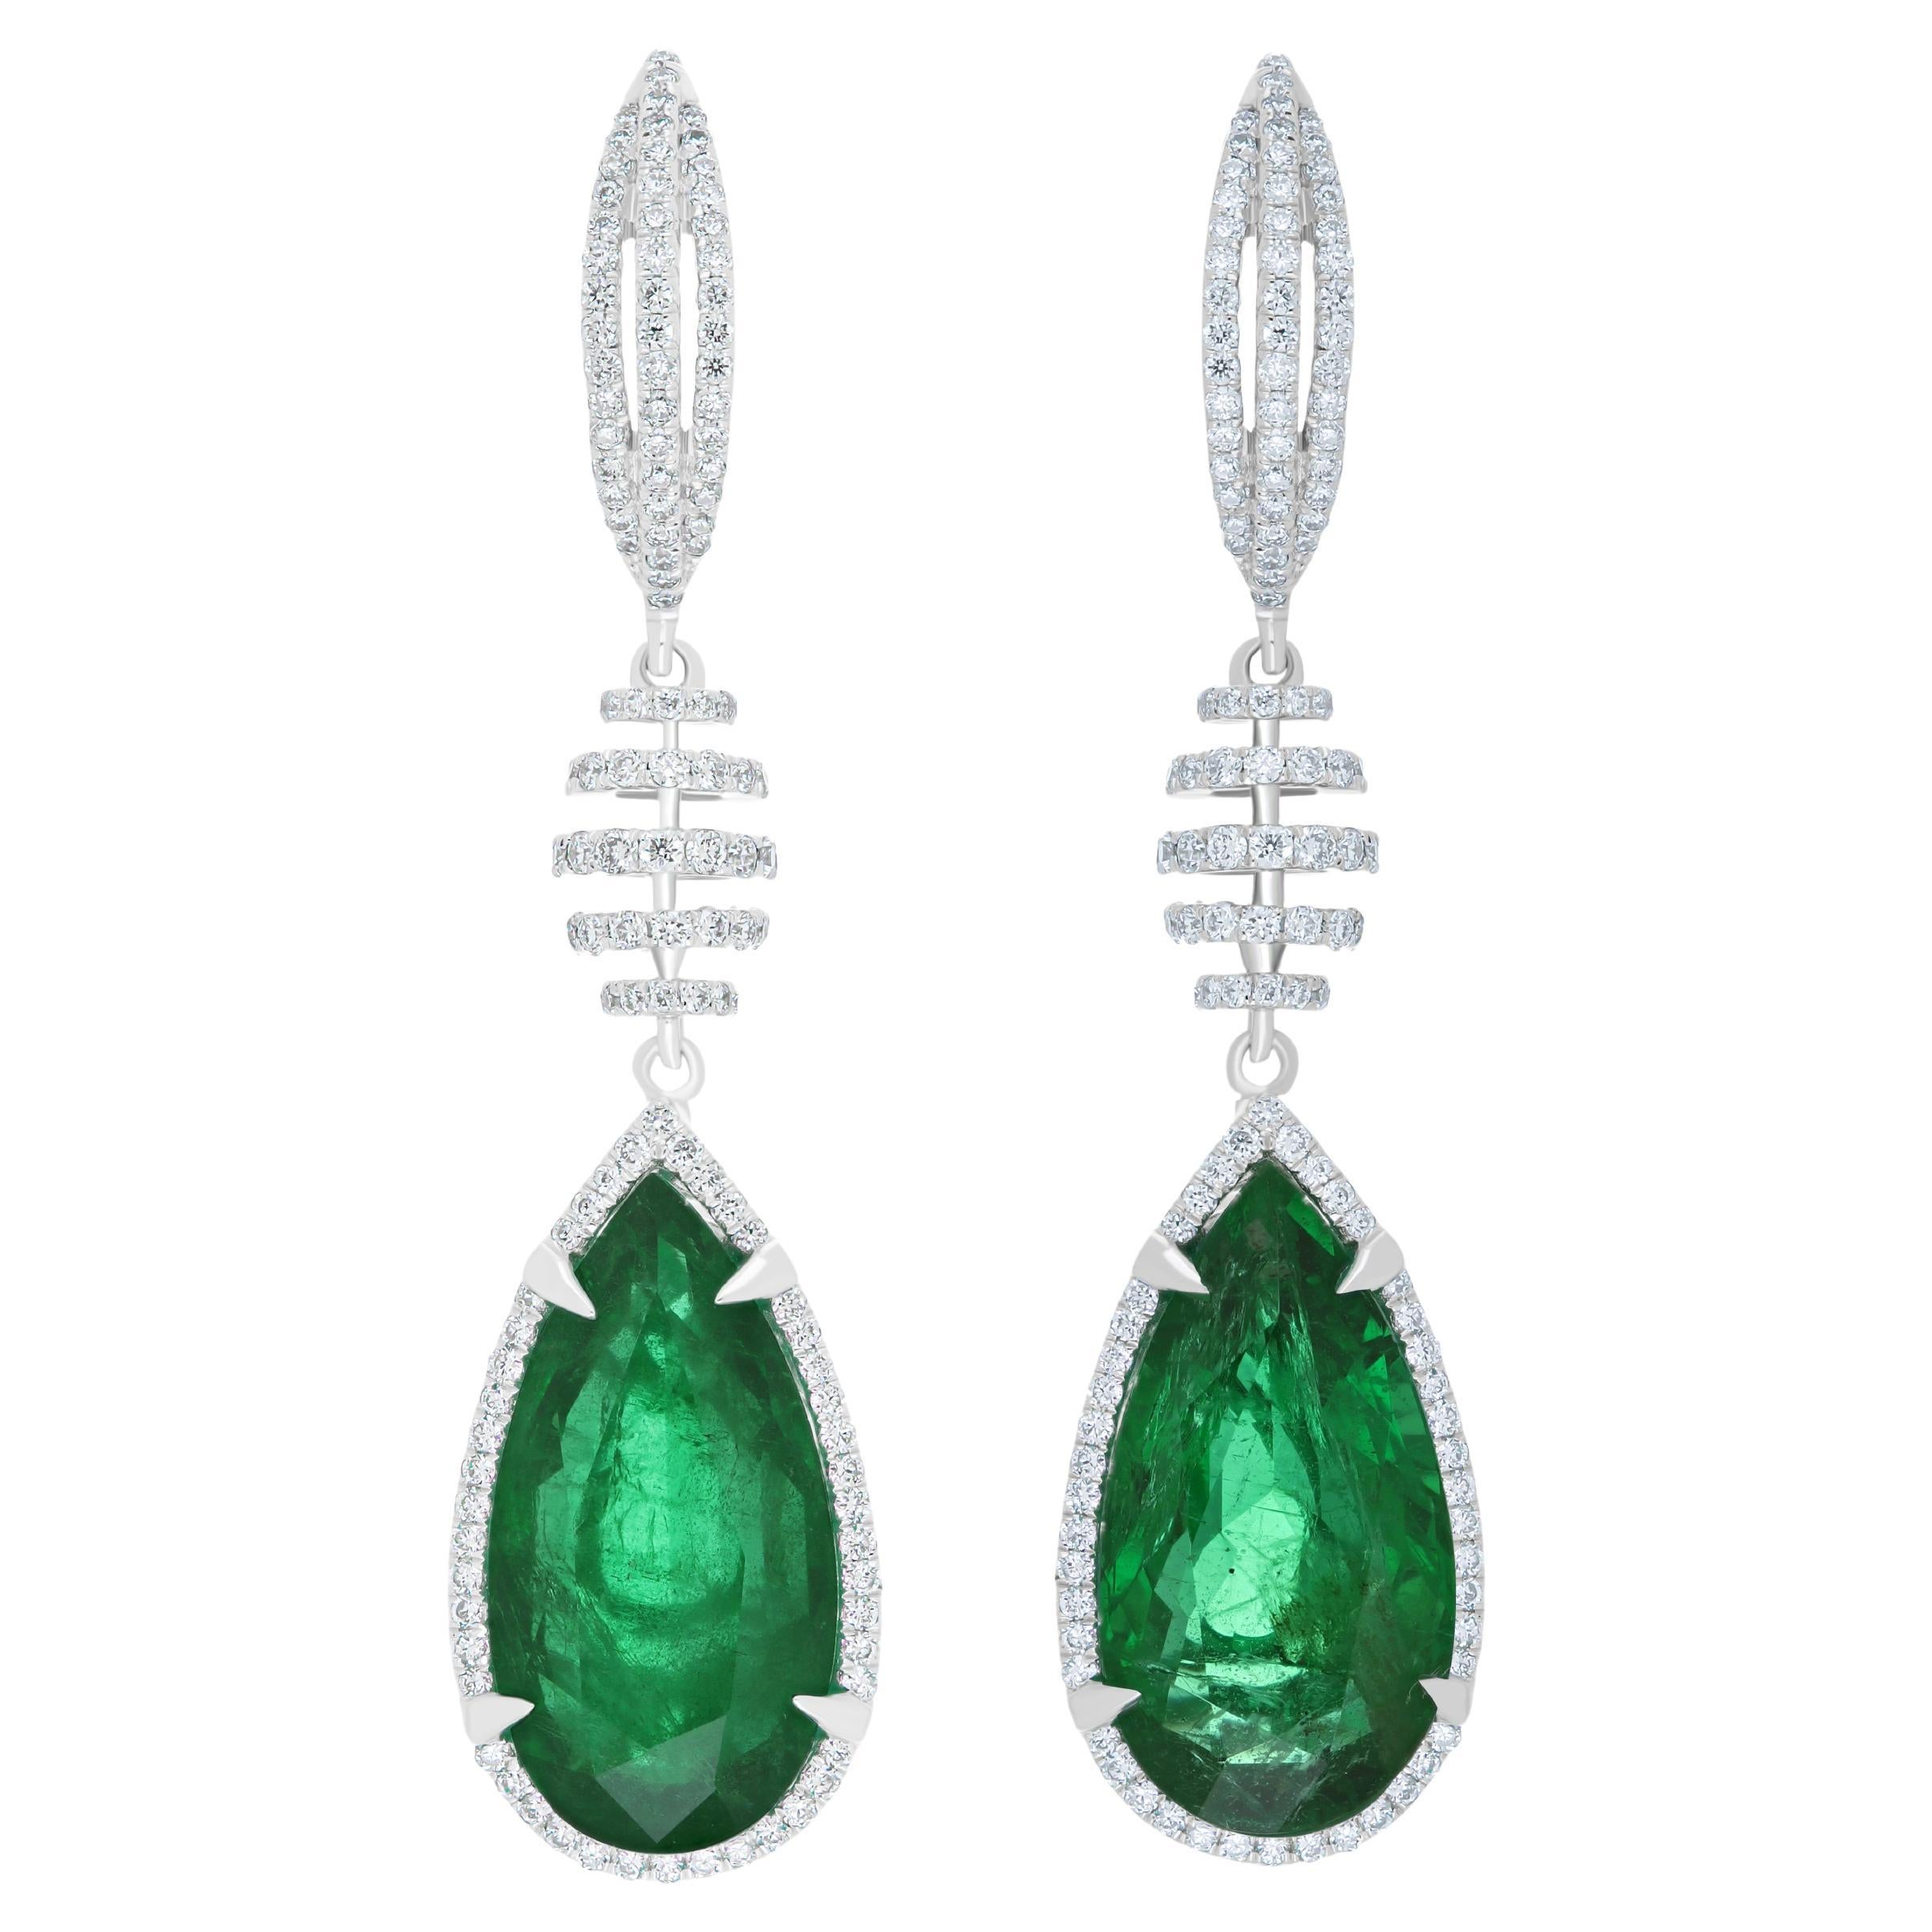 Ohrring mit Smaragd und Diamant aus 18 Karat Weißgold für Charismas Party-Ohrring 